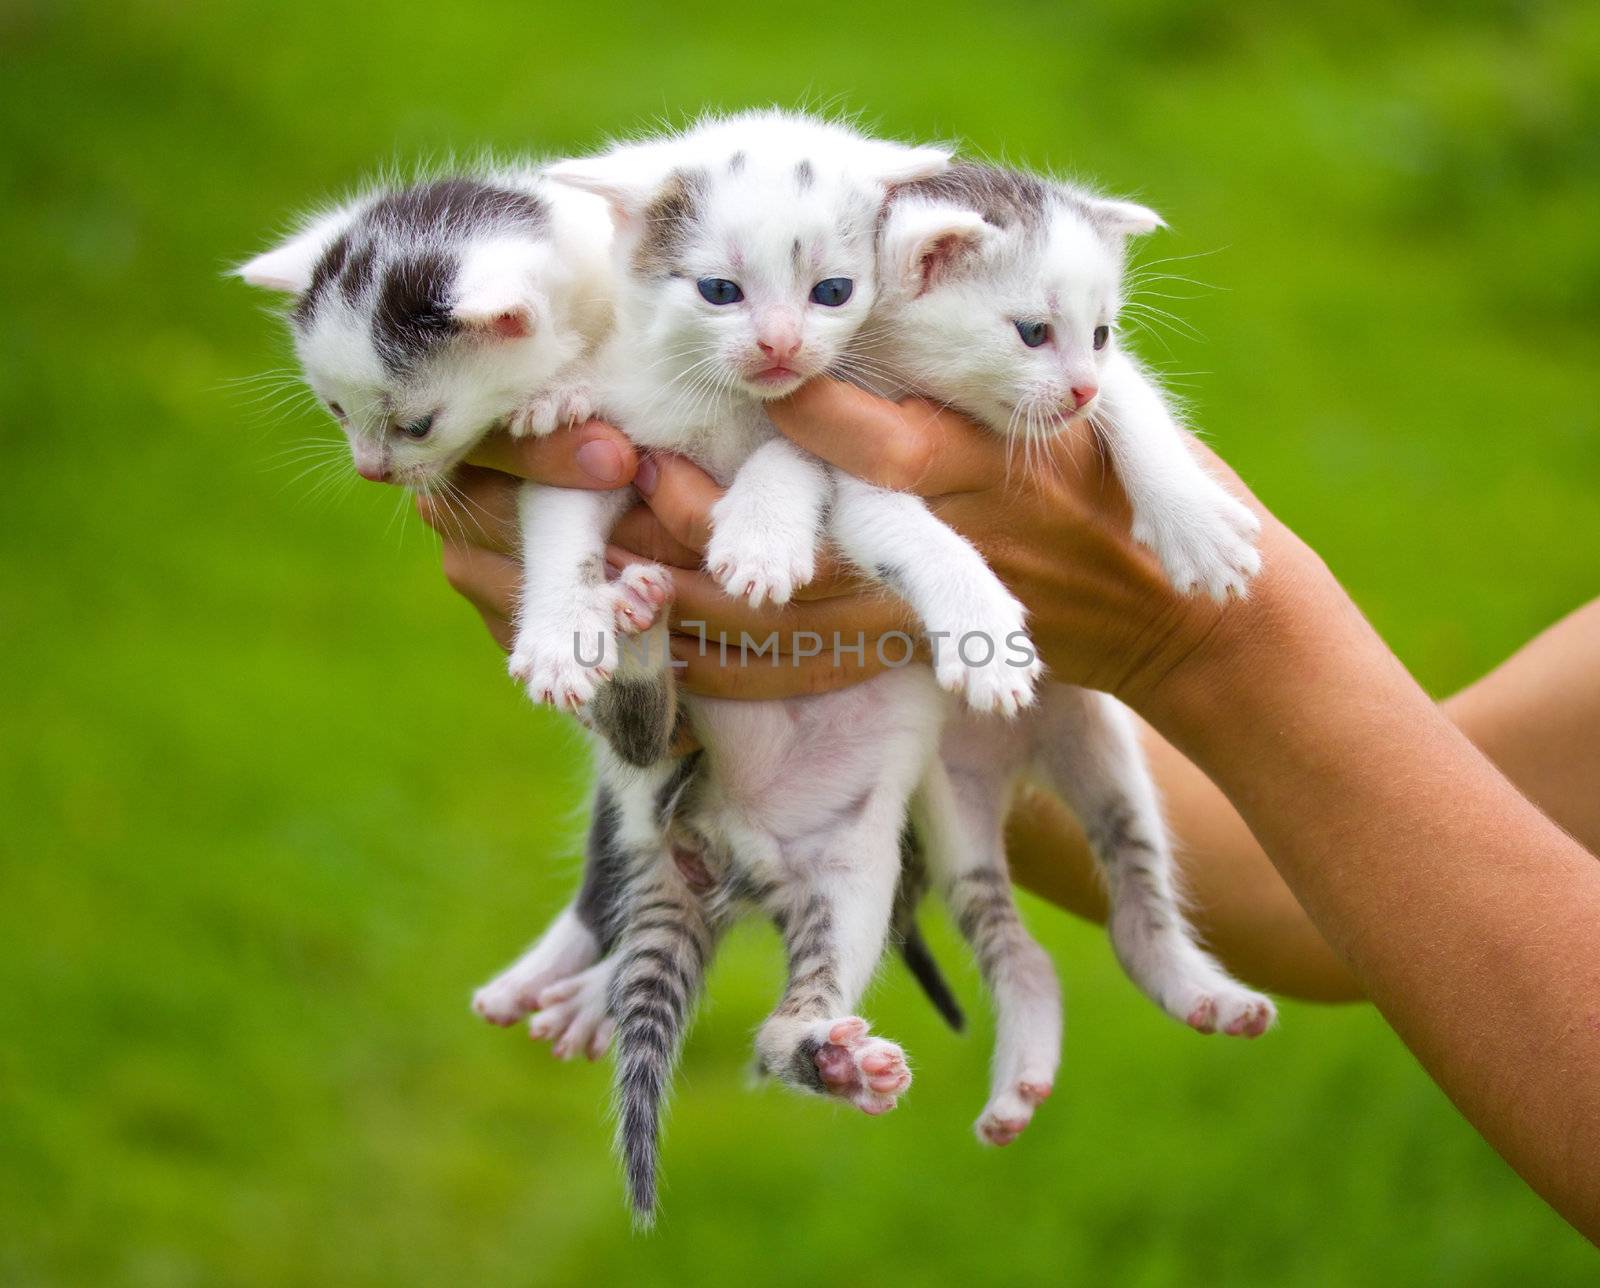 three little kittens in hands by Alekcey